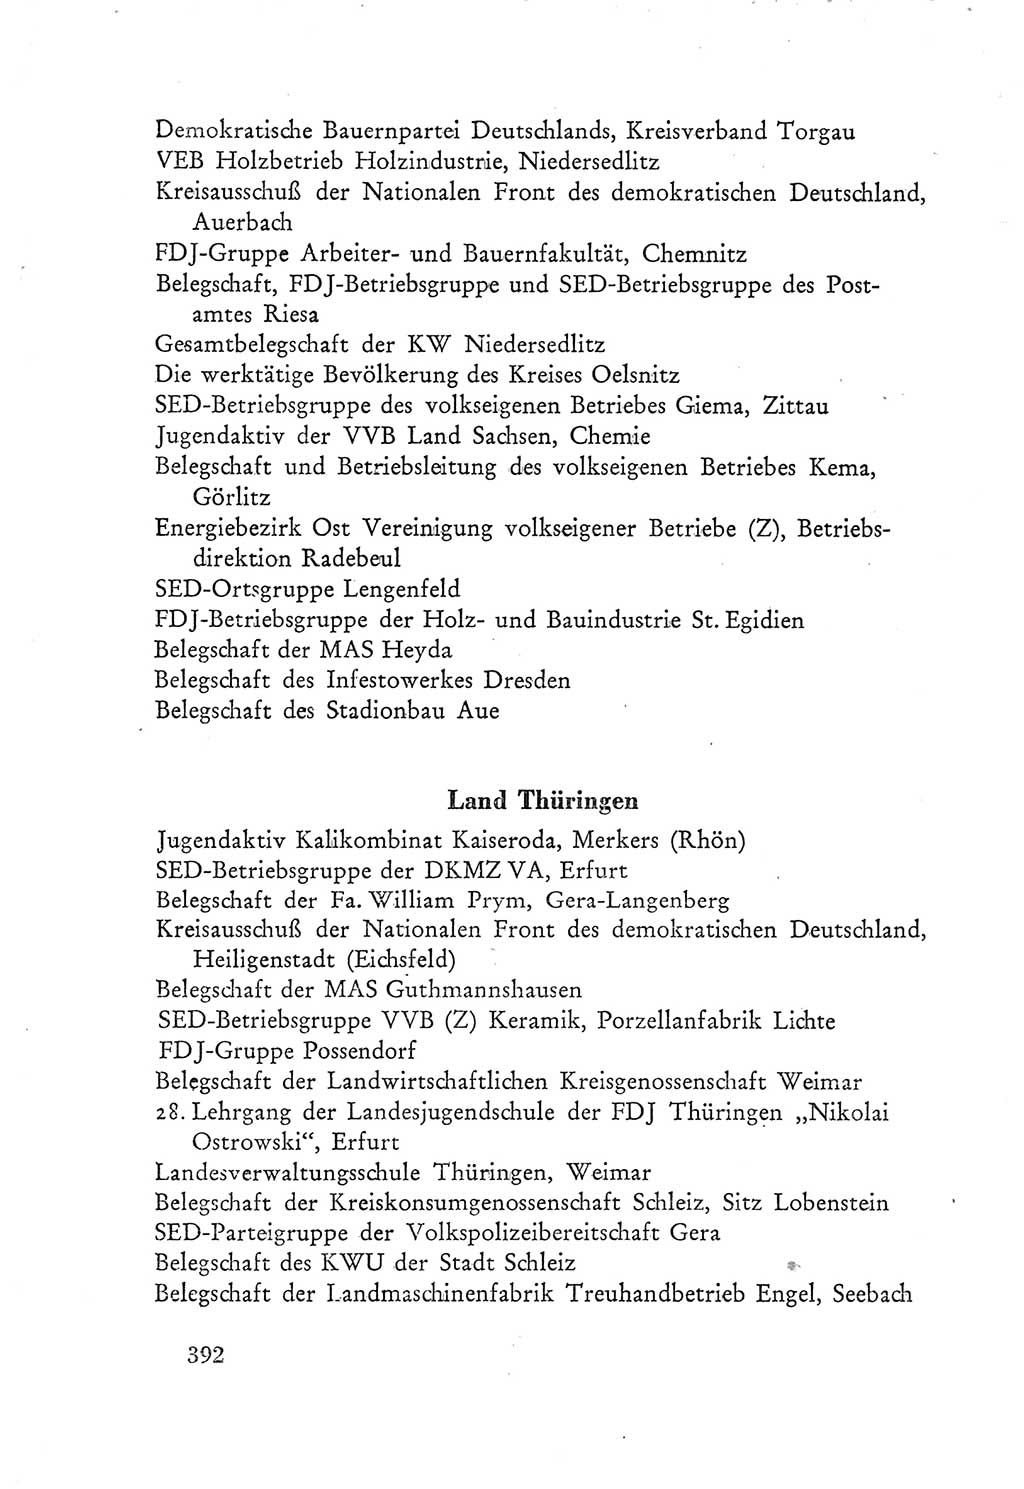 Protokoll der Verhandlungen des Ⅲ. Parteitages der Sozialistischen Einheitspartei Deutschlands (SED) [Deutsche Demokratische Republik (DDR)] 1950, Band 2, Seite 392 (Prot. Verh. Ⅲ. PT SED DDR 1950, Bd. 2, S. 392)